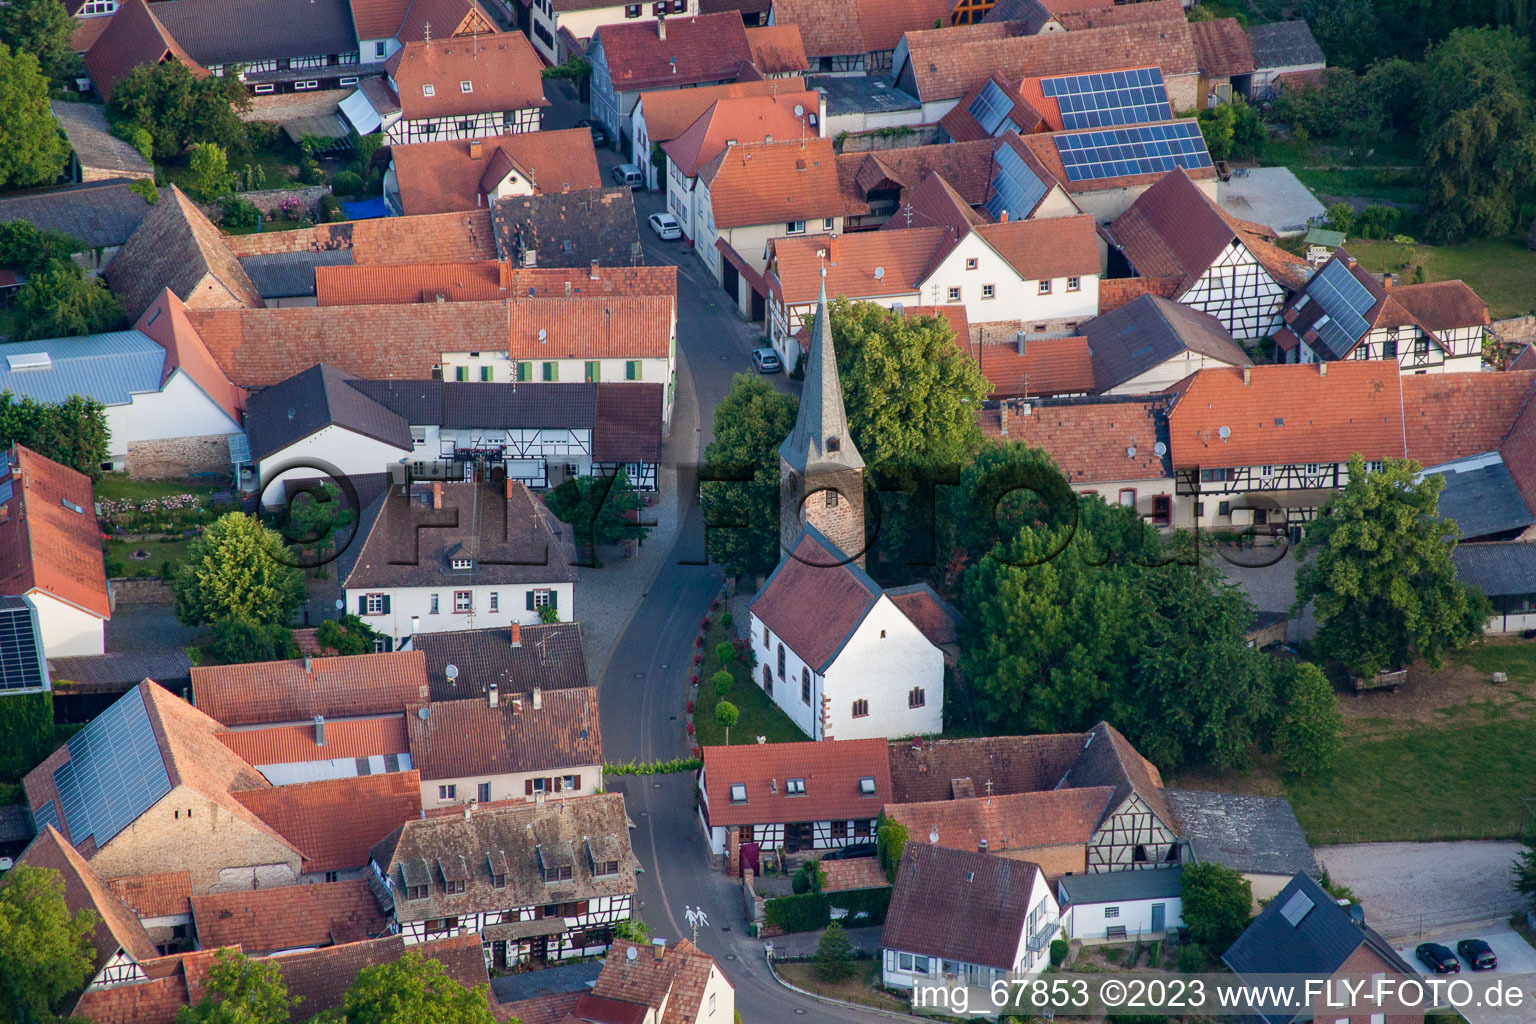 Drone image of District Klingen in Heuchelheim-Klingen in the state Rhineland-Palatinate, Germany